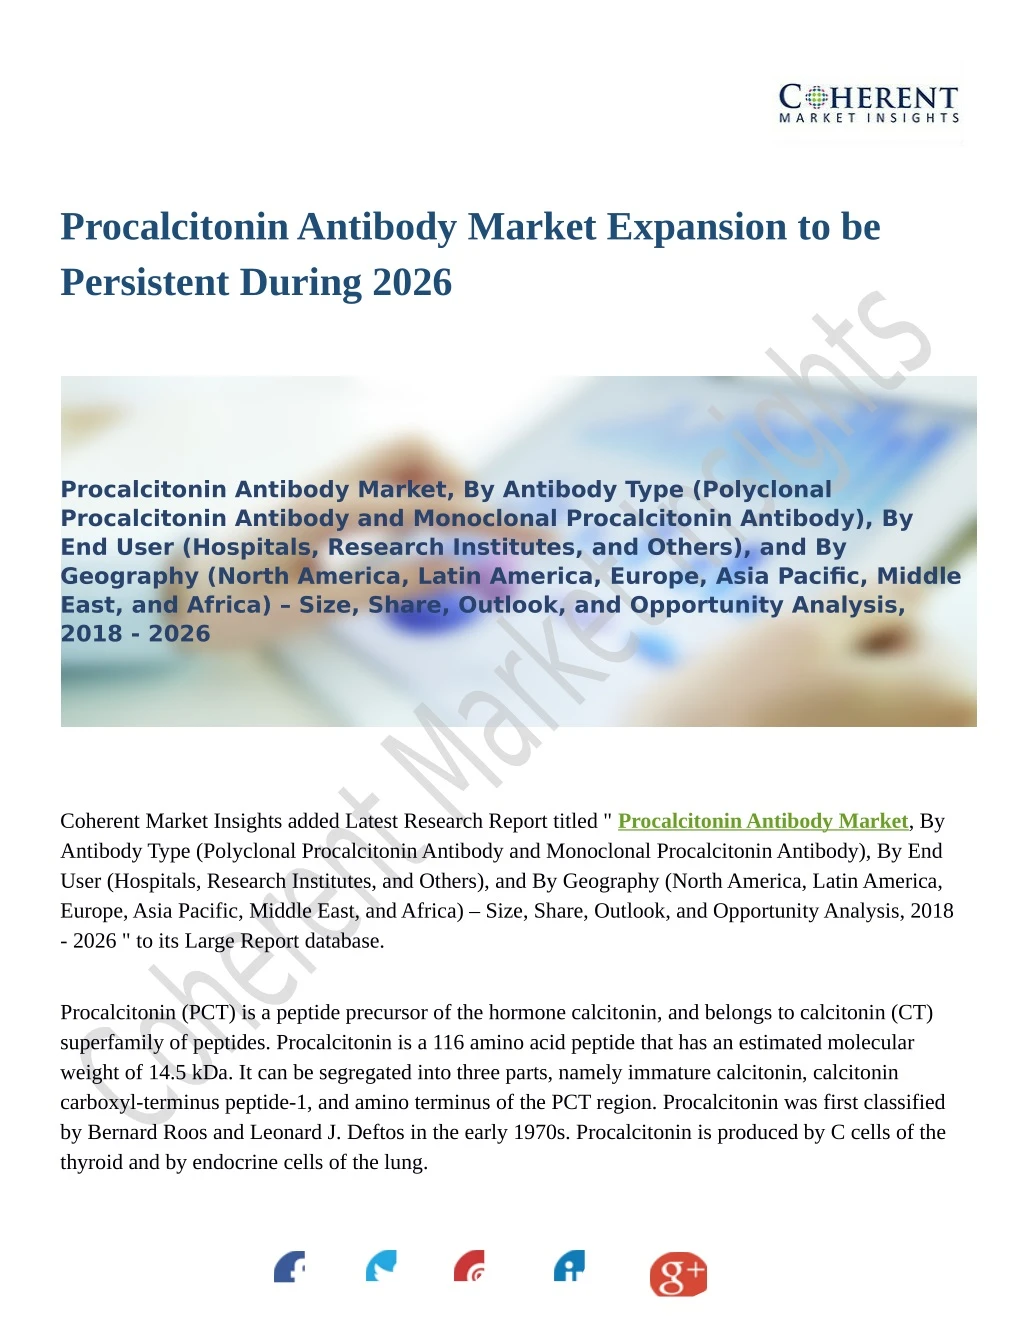 procalcitonin antibody market expansion